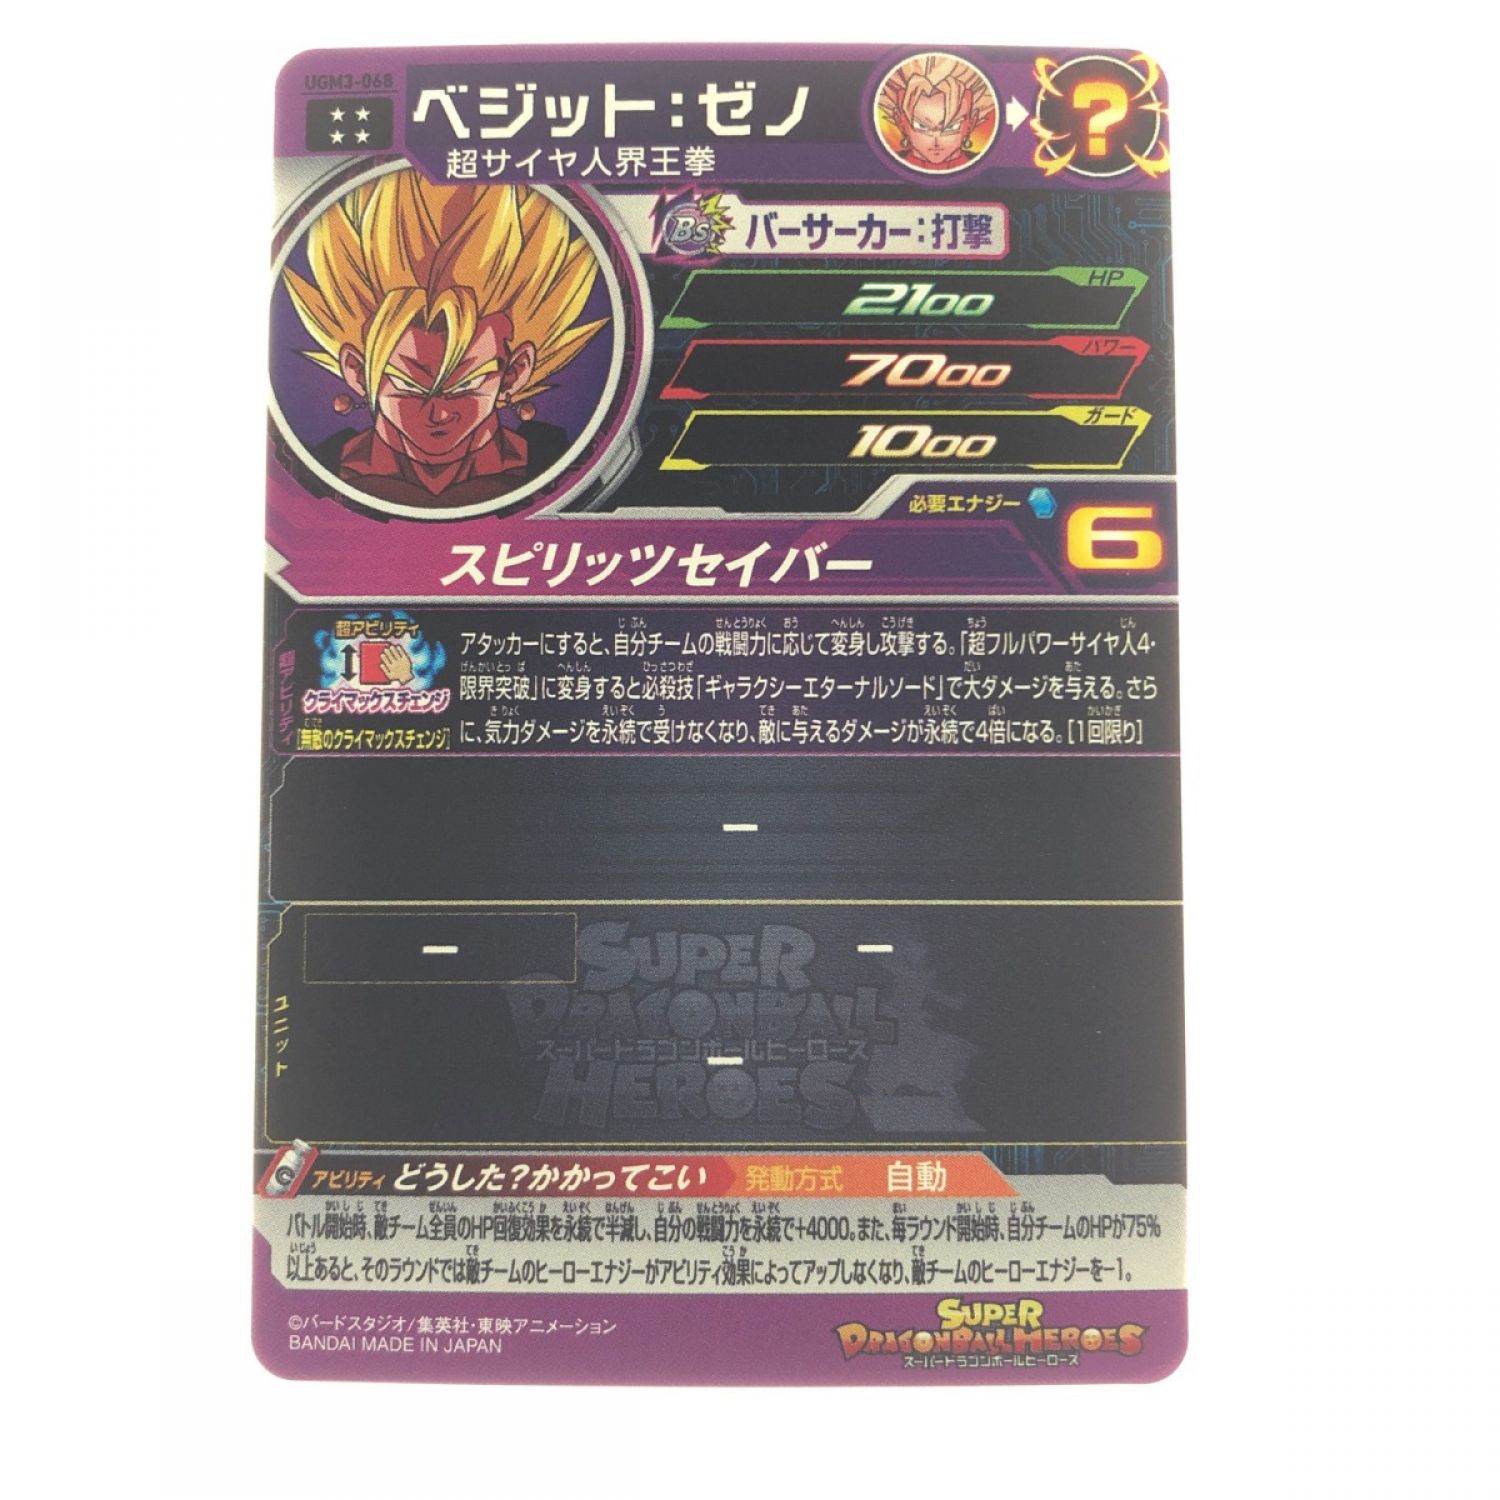 カードドラゴンボールヒーローズ UGM3-068 ベジット:ゼノ - カード